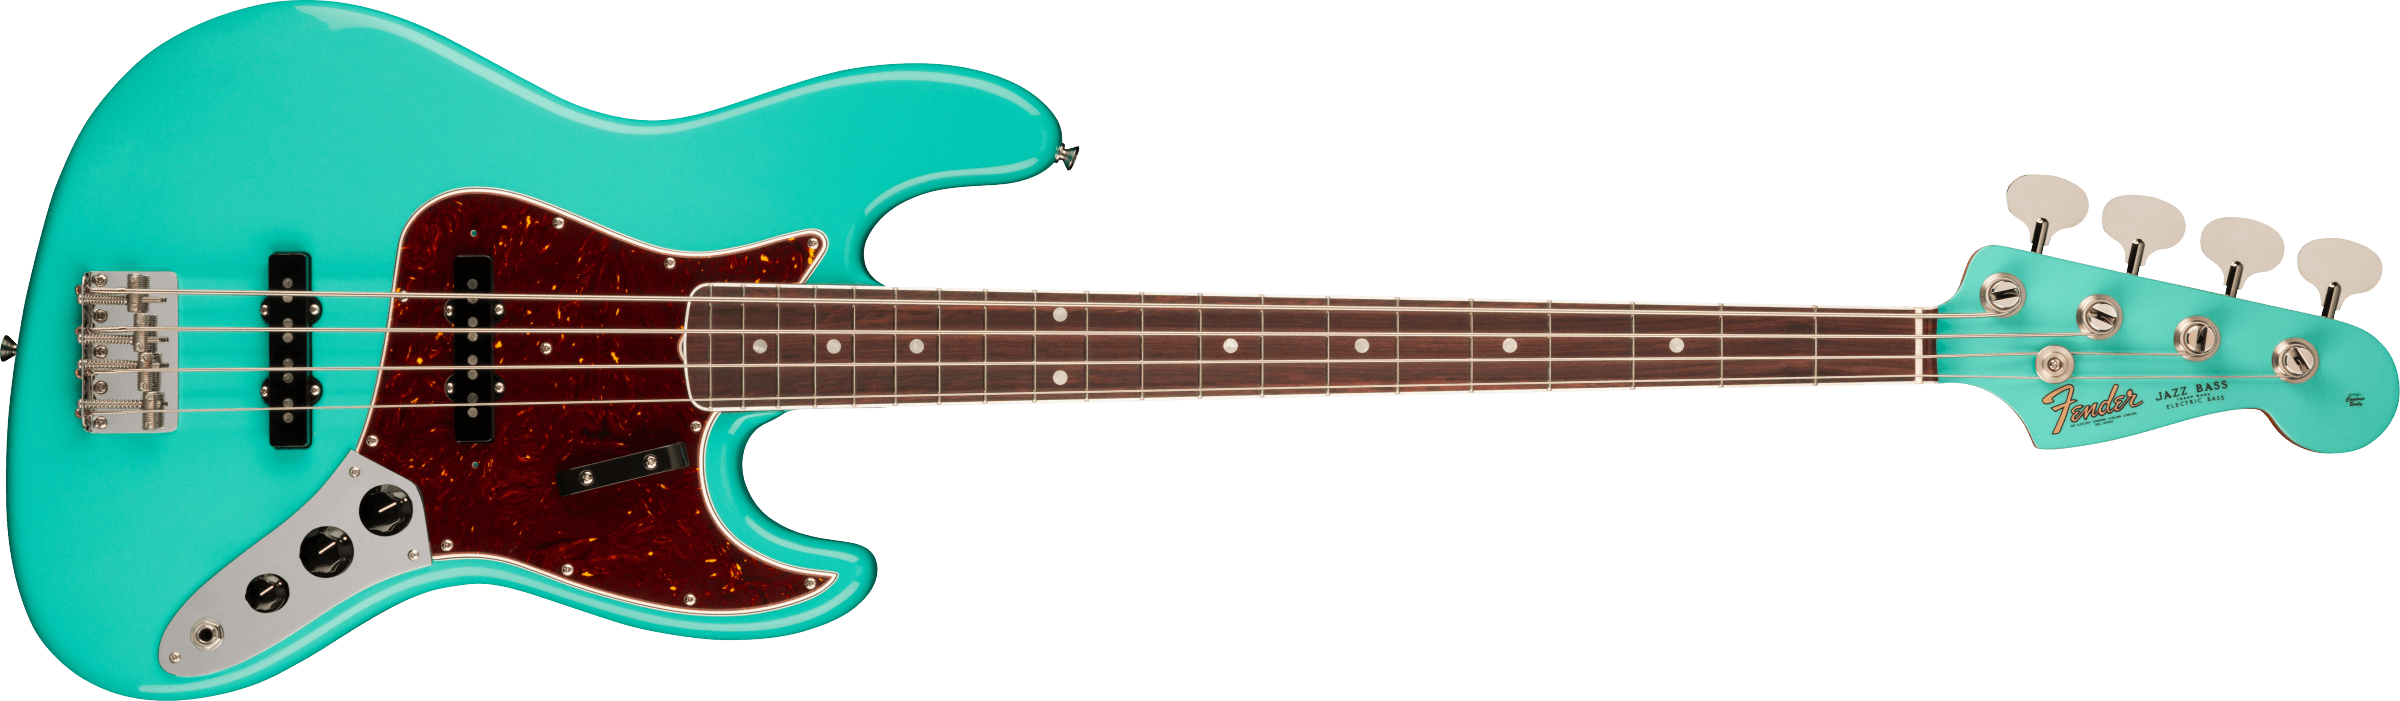 Fender American Vintage II 1966 Jazz Bass Rosewood Fingerboard, Sea Foam Green 0190170849